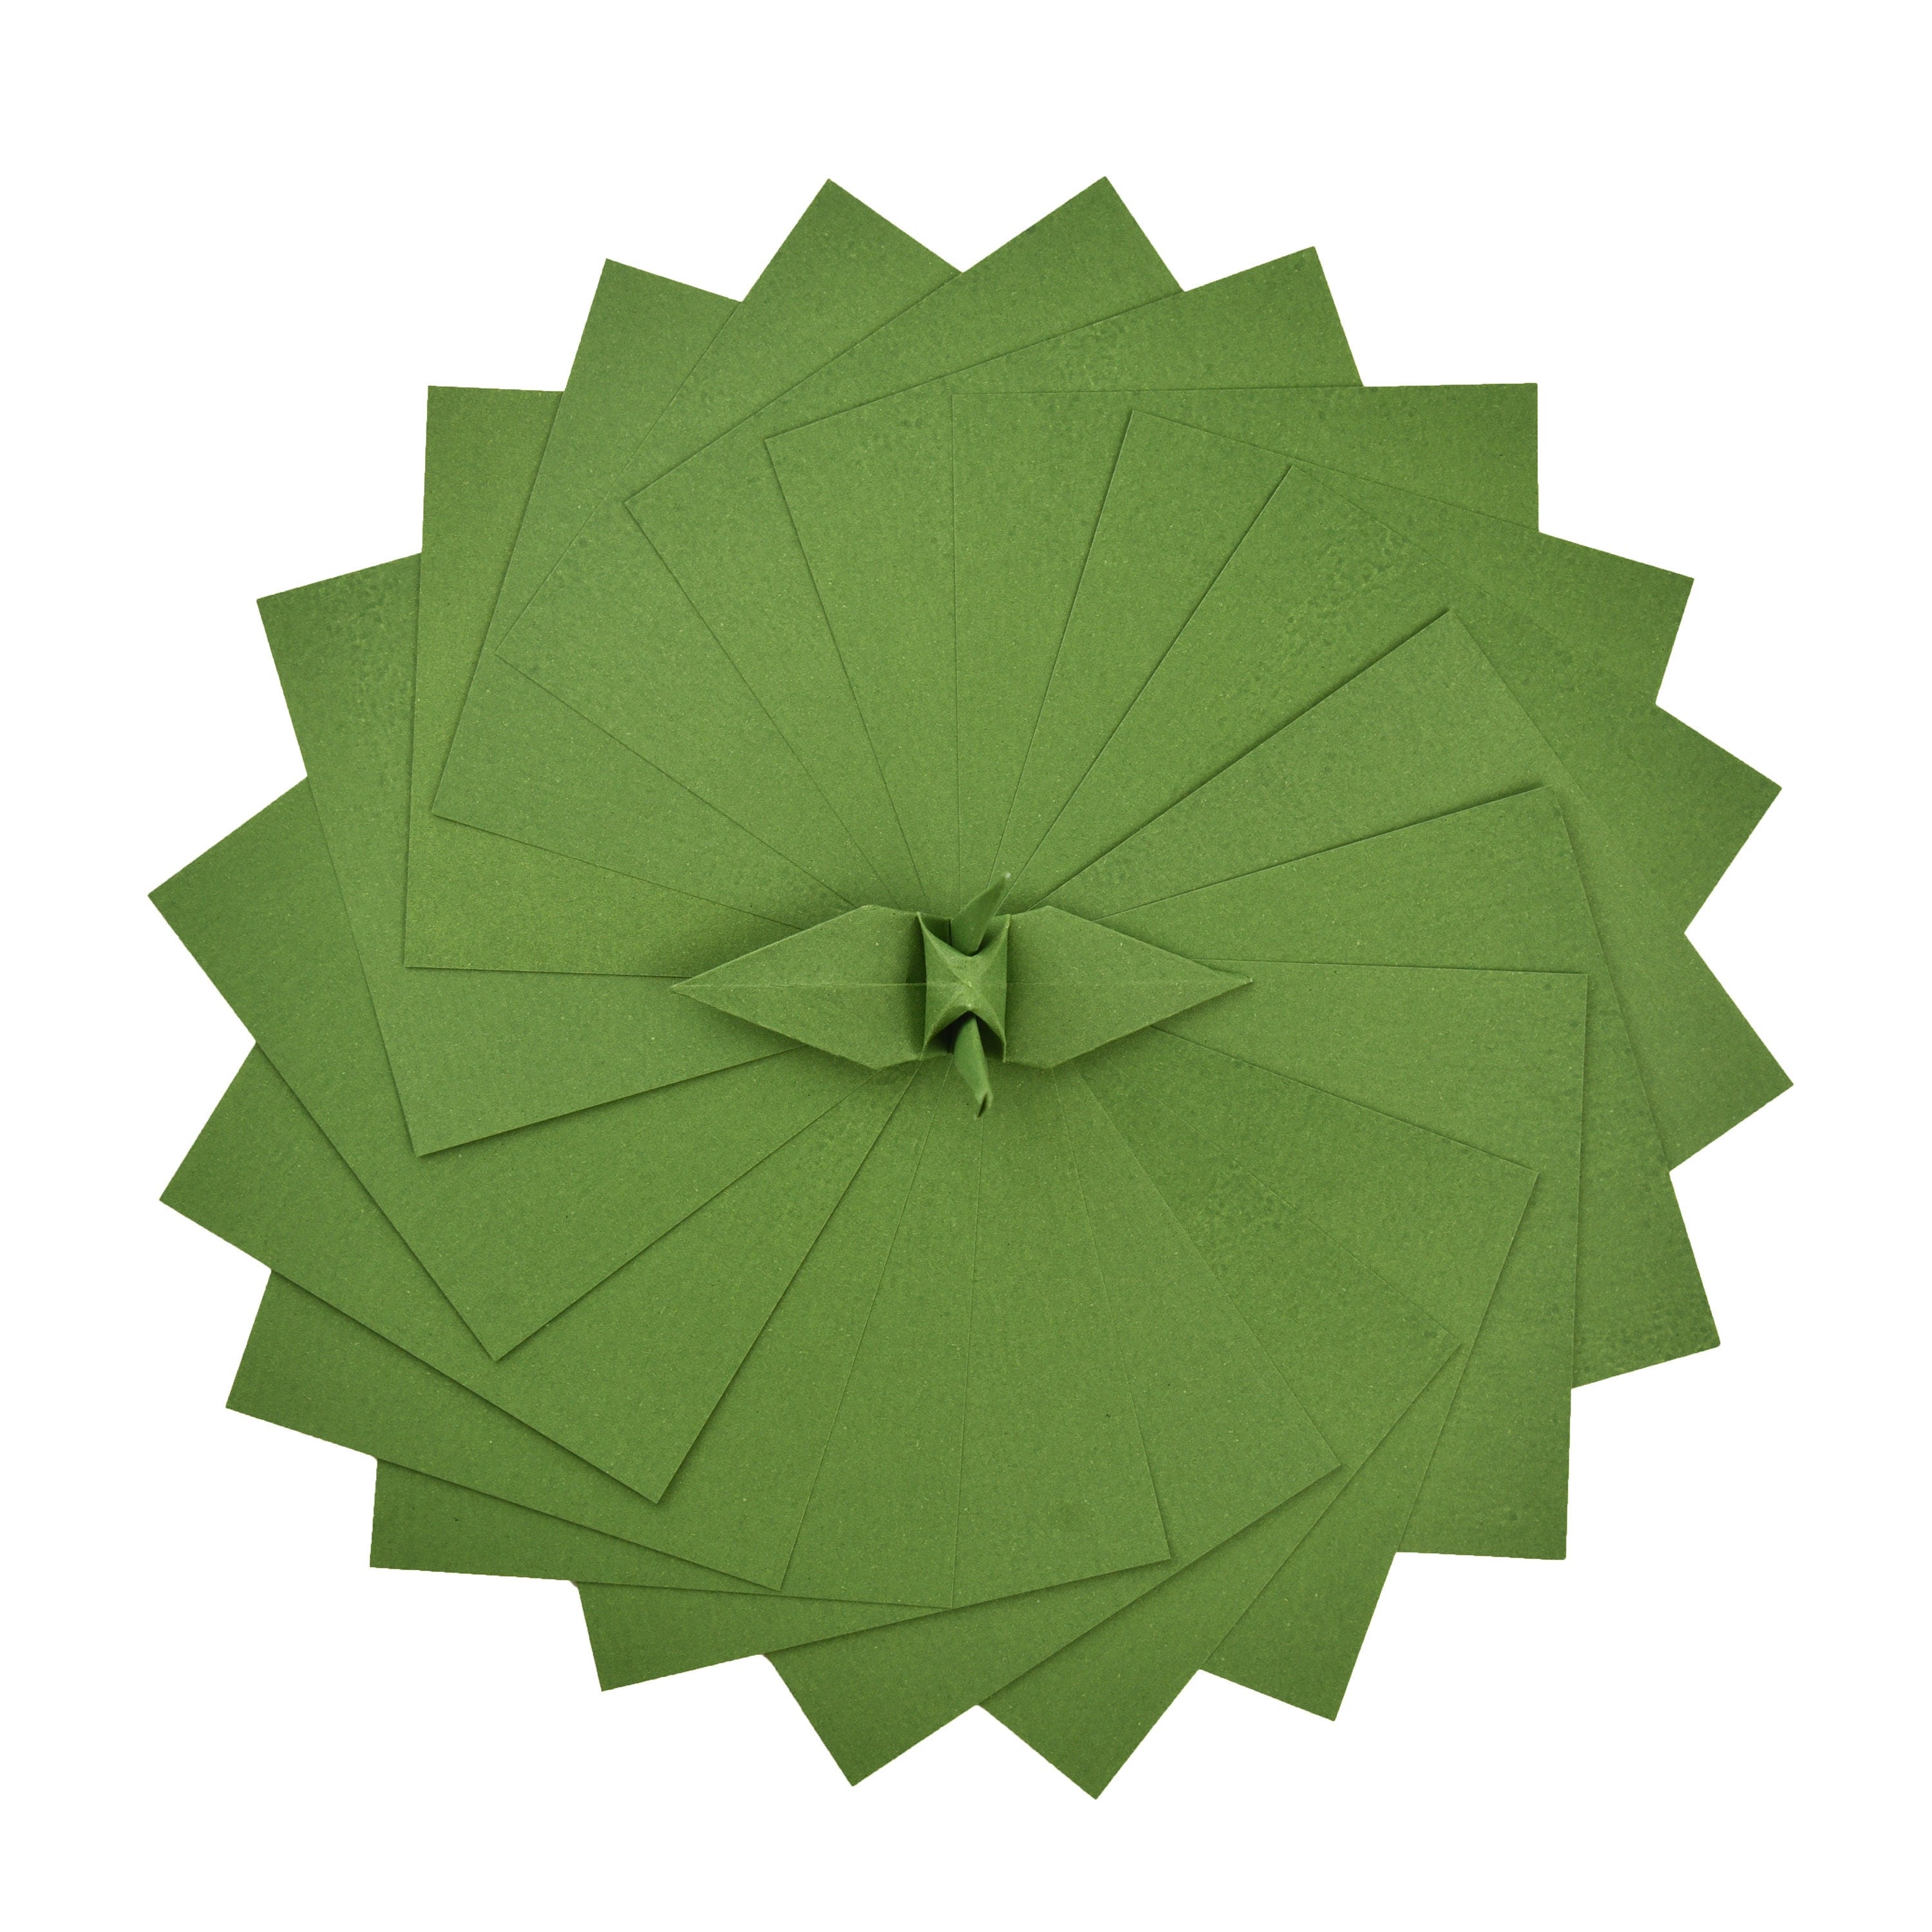 100 fogli di carta origami - 6x6 pollici - Confezione di carta quadrata per piegare, gru origami e decorazioni - S23